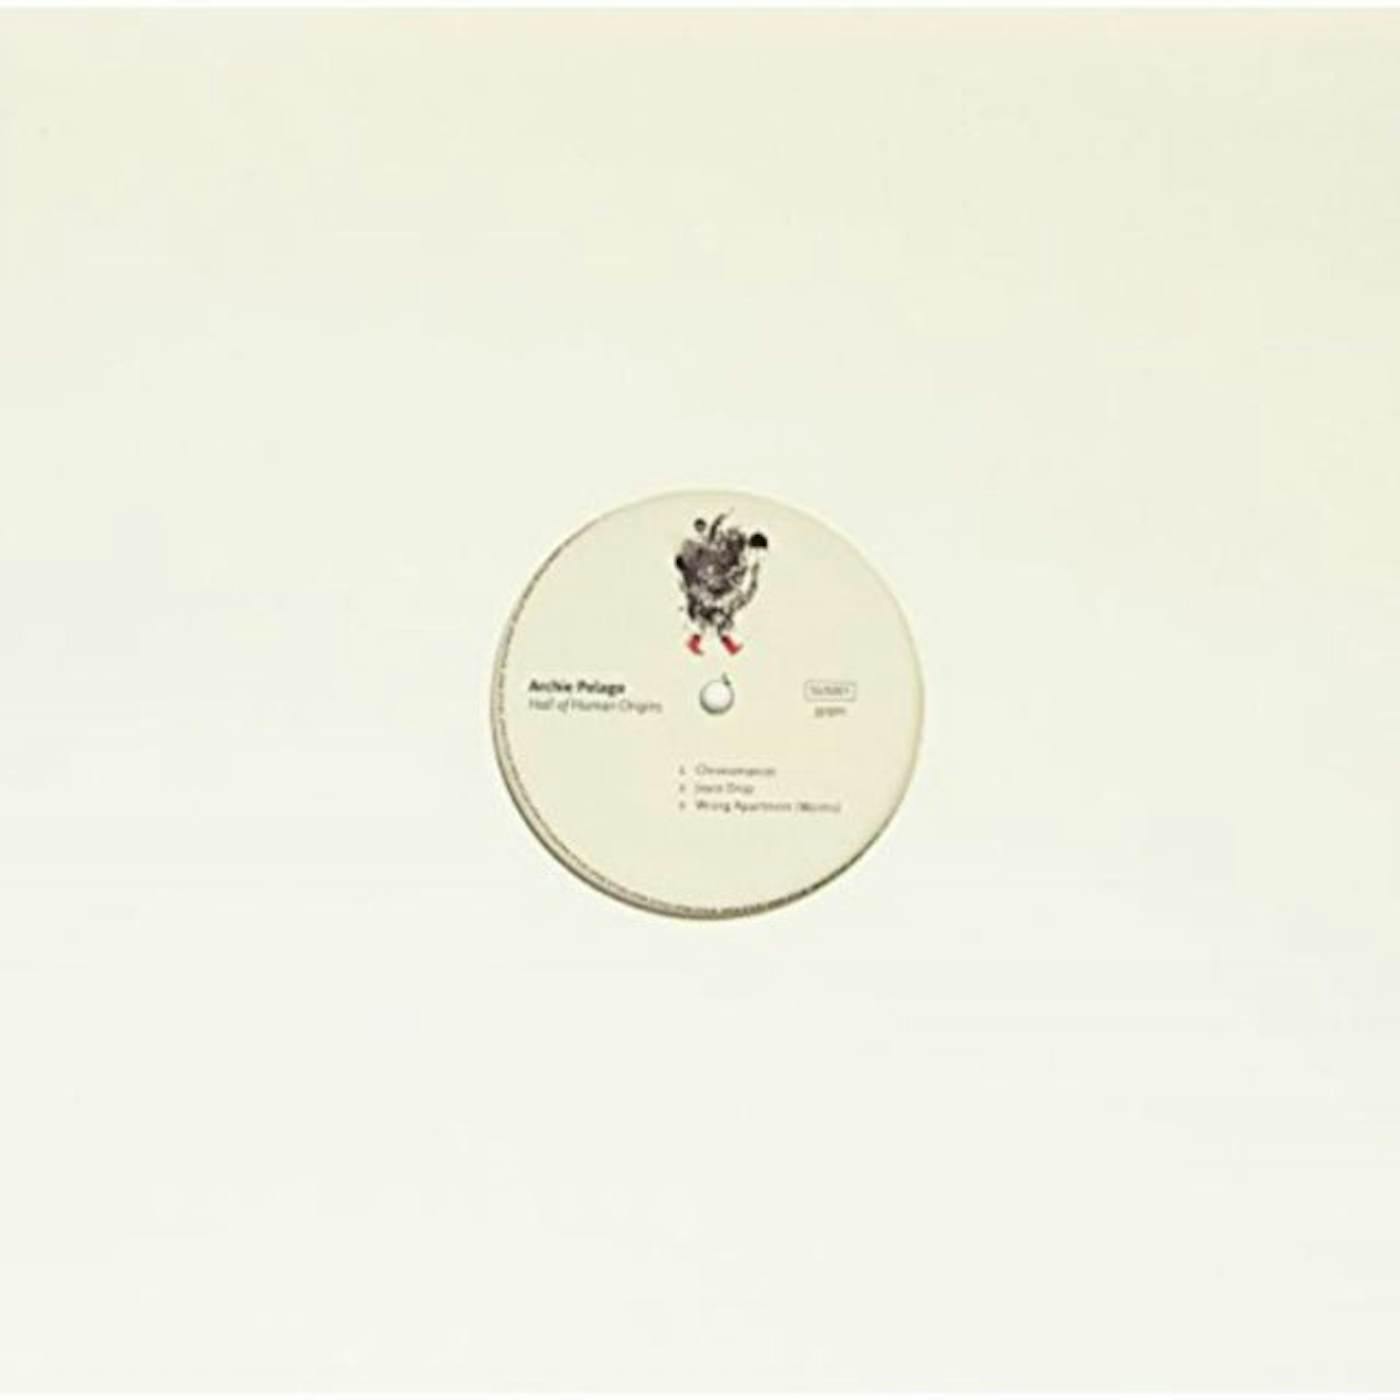 Archie Pelago LP - Hall Of Human Origins (Vinyl)